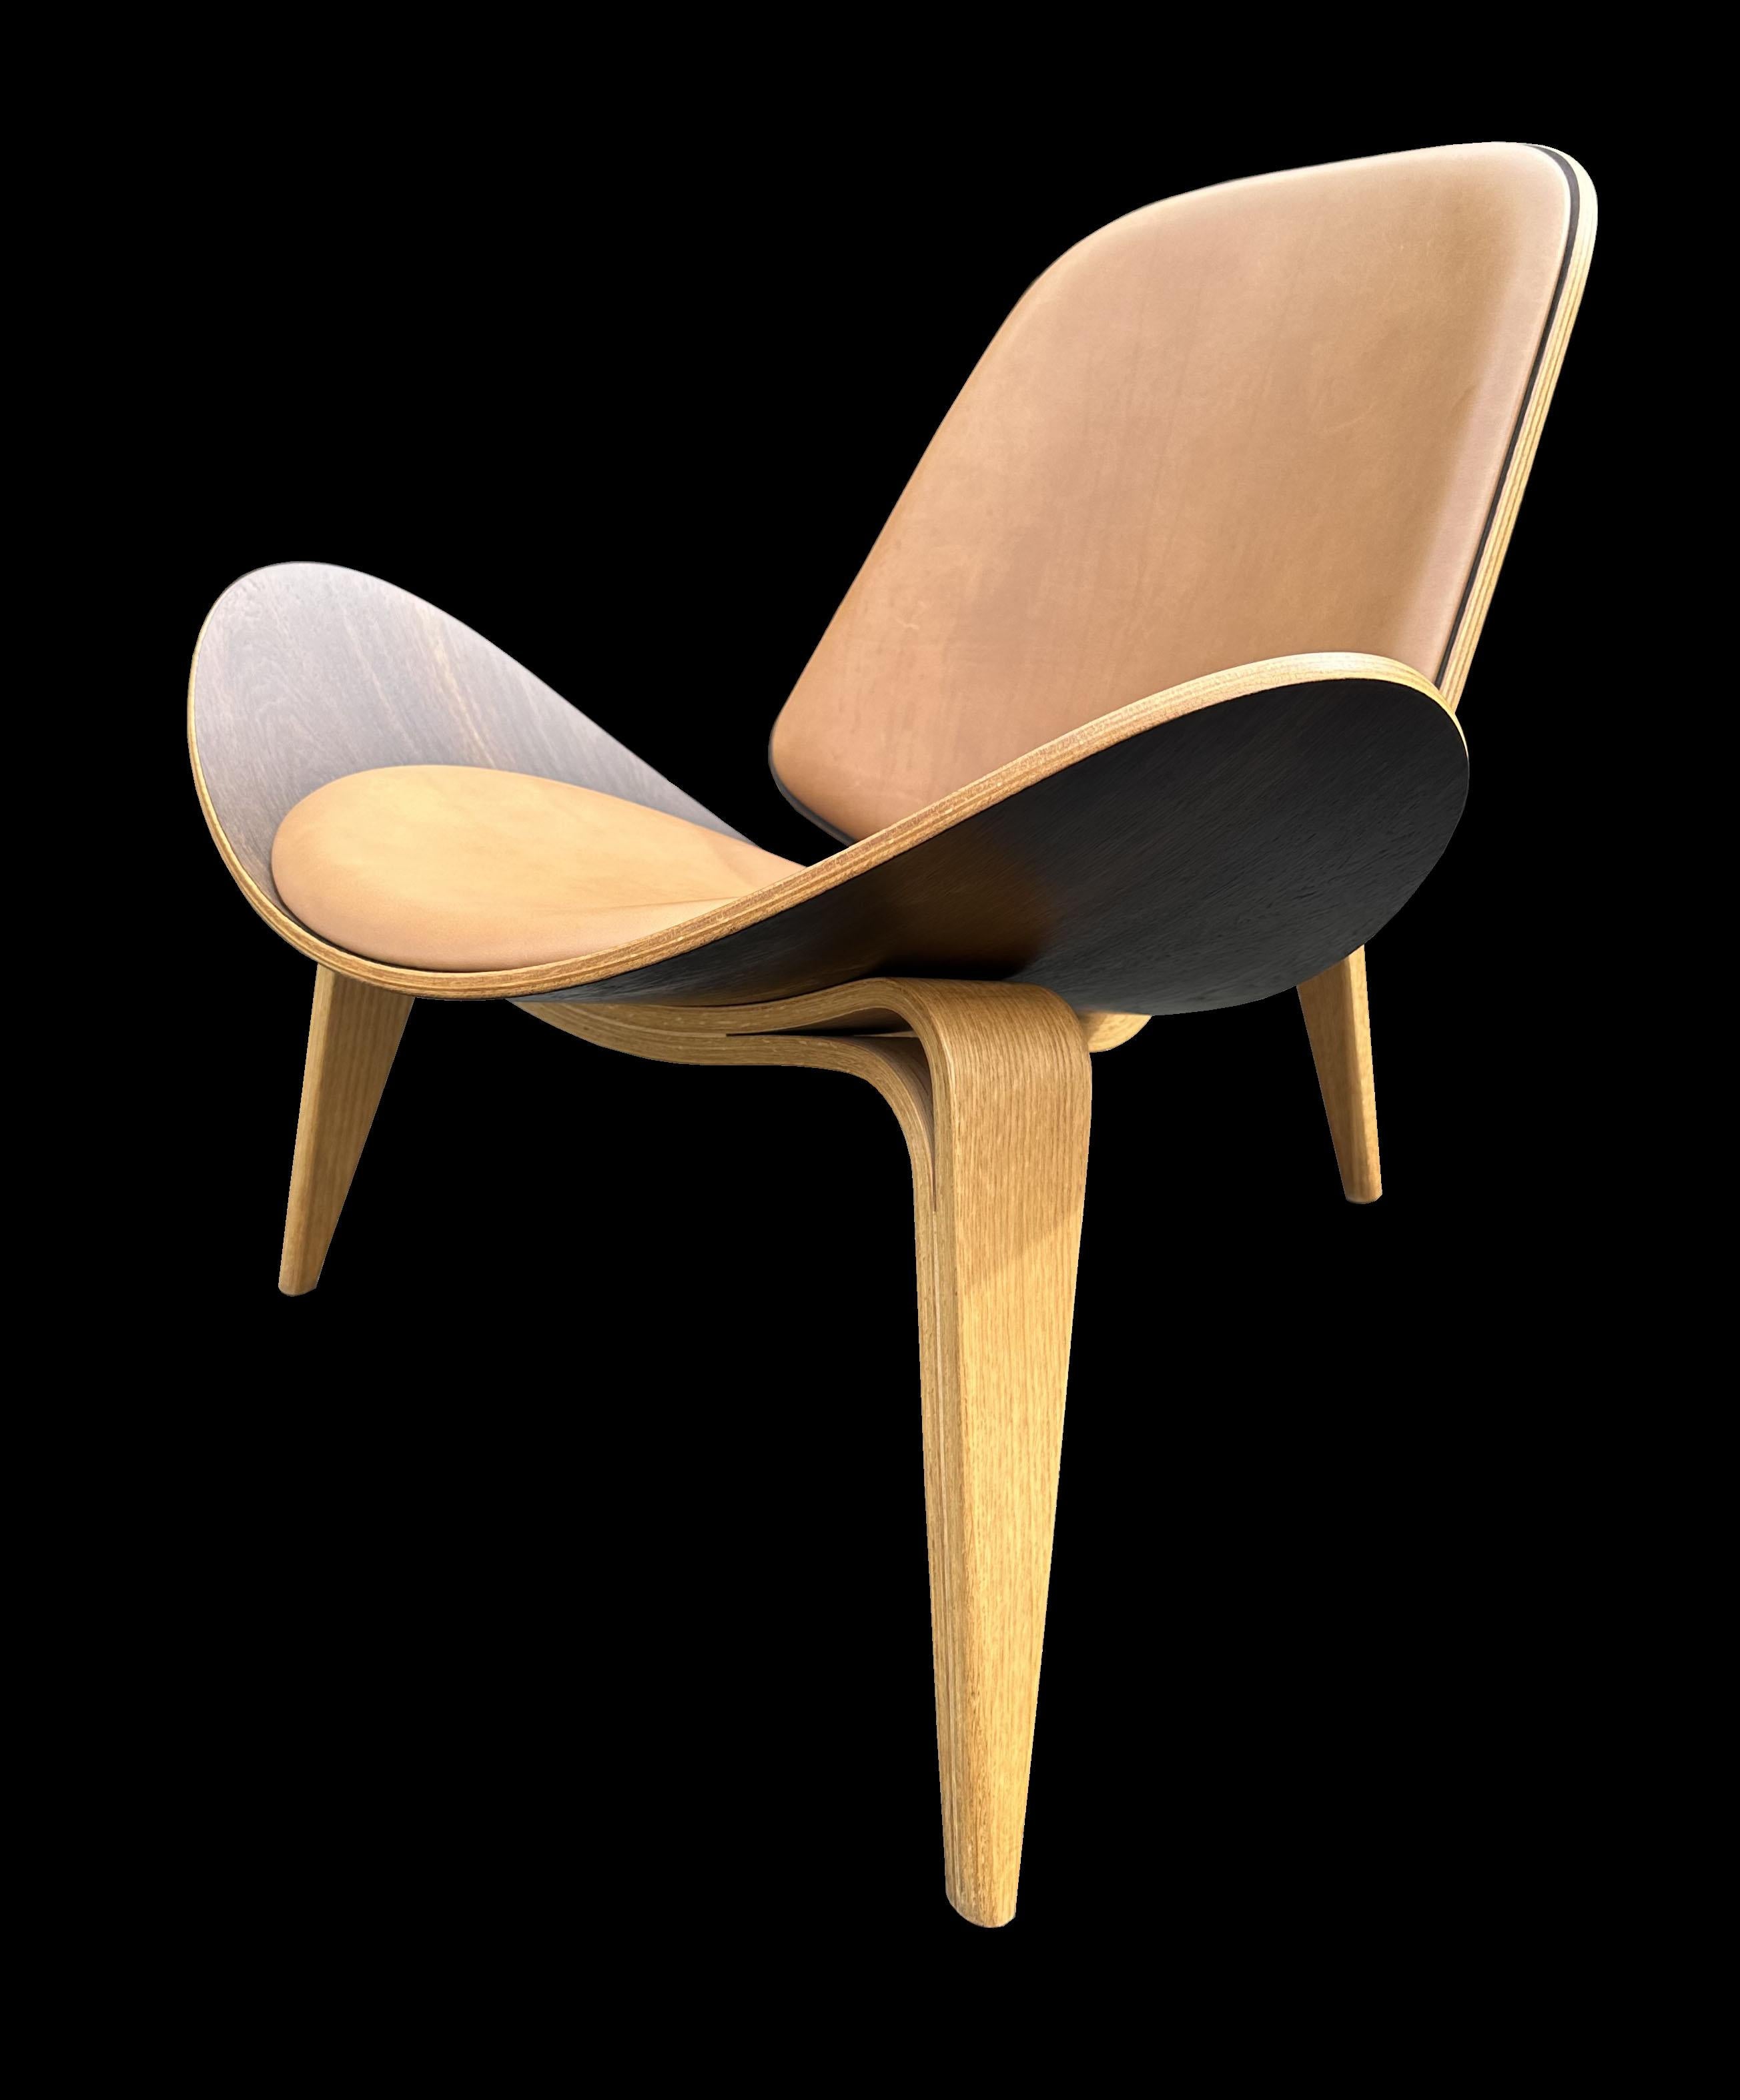 Als Hans J. Wegner diesen Stuhl 1963 entwarf, war er für die Öffentlichkeit etwas zu radikal und wurde nur in sehr geringen Stückzahlen verkauft. Als sich die Welt in den 1980er und frühen 90er Jahren der Genialität des Designs bewusst wurde,